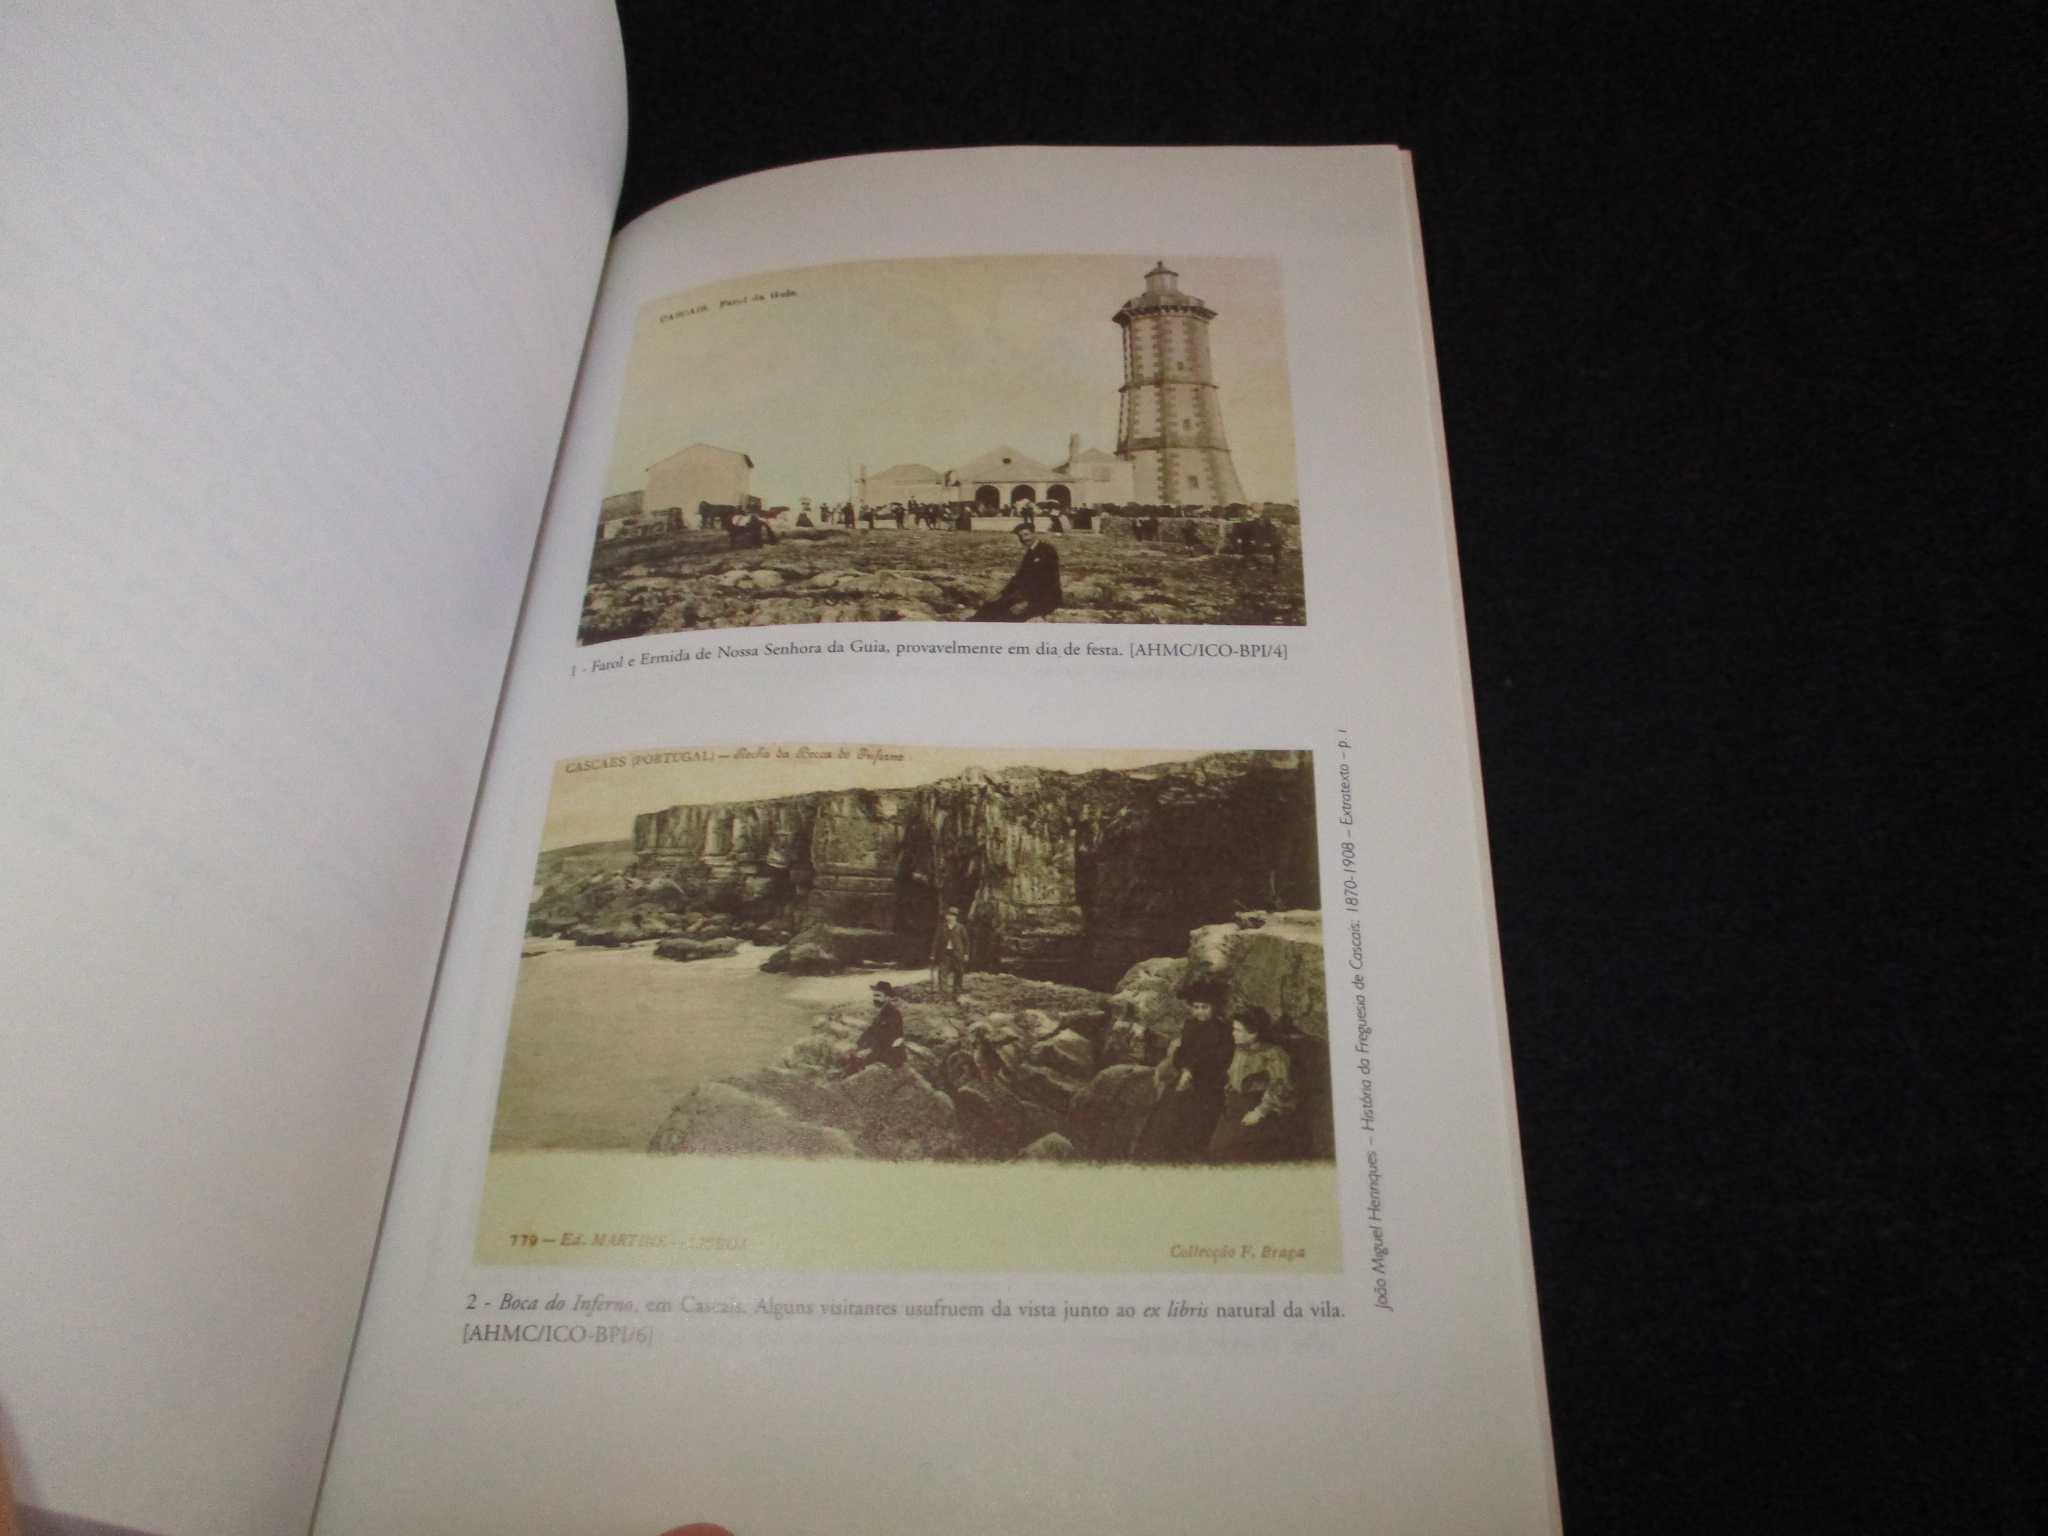 Livro História da Freguesia de Cascais 1870 a 1908